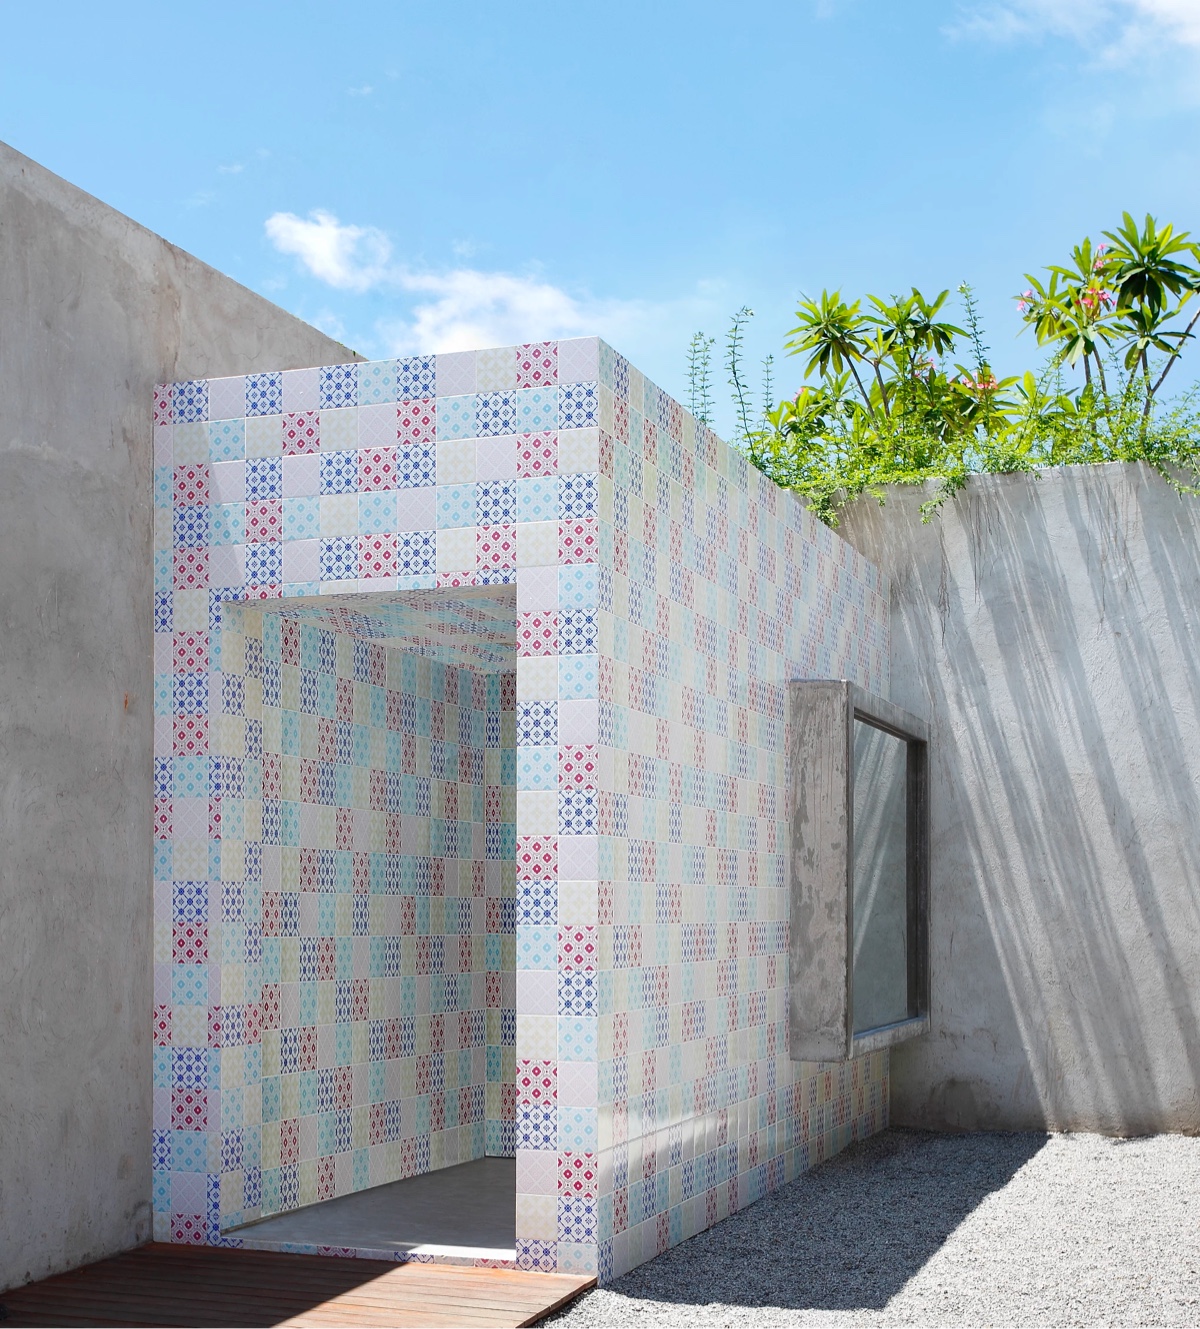 hình ảnh sân thượng ngôi nhà miền nhiệt đới với bức tường ốp gạch màu sắc hút mắt